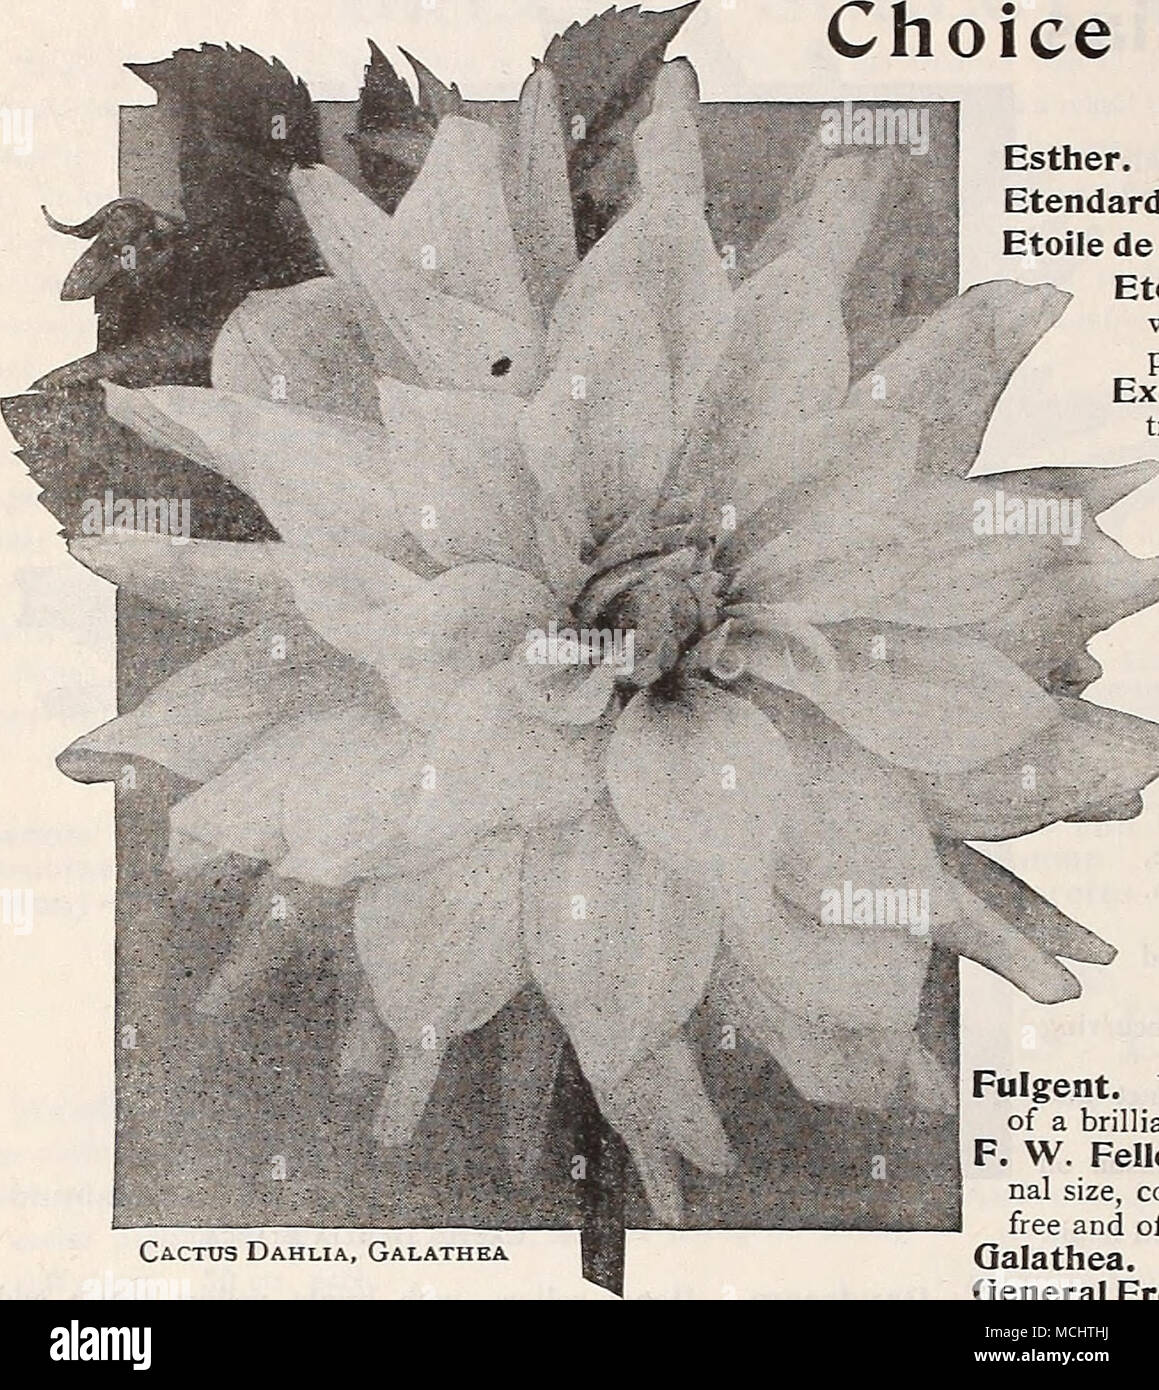 Dalia Cactus, Galathea una luz 50 cts. Qlueckskind. Una de las muchas  variedades de floración libre delicada rosa suave con salmón matizacion;  para el corte fino cts. cada uno. Corona de